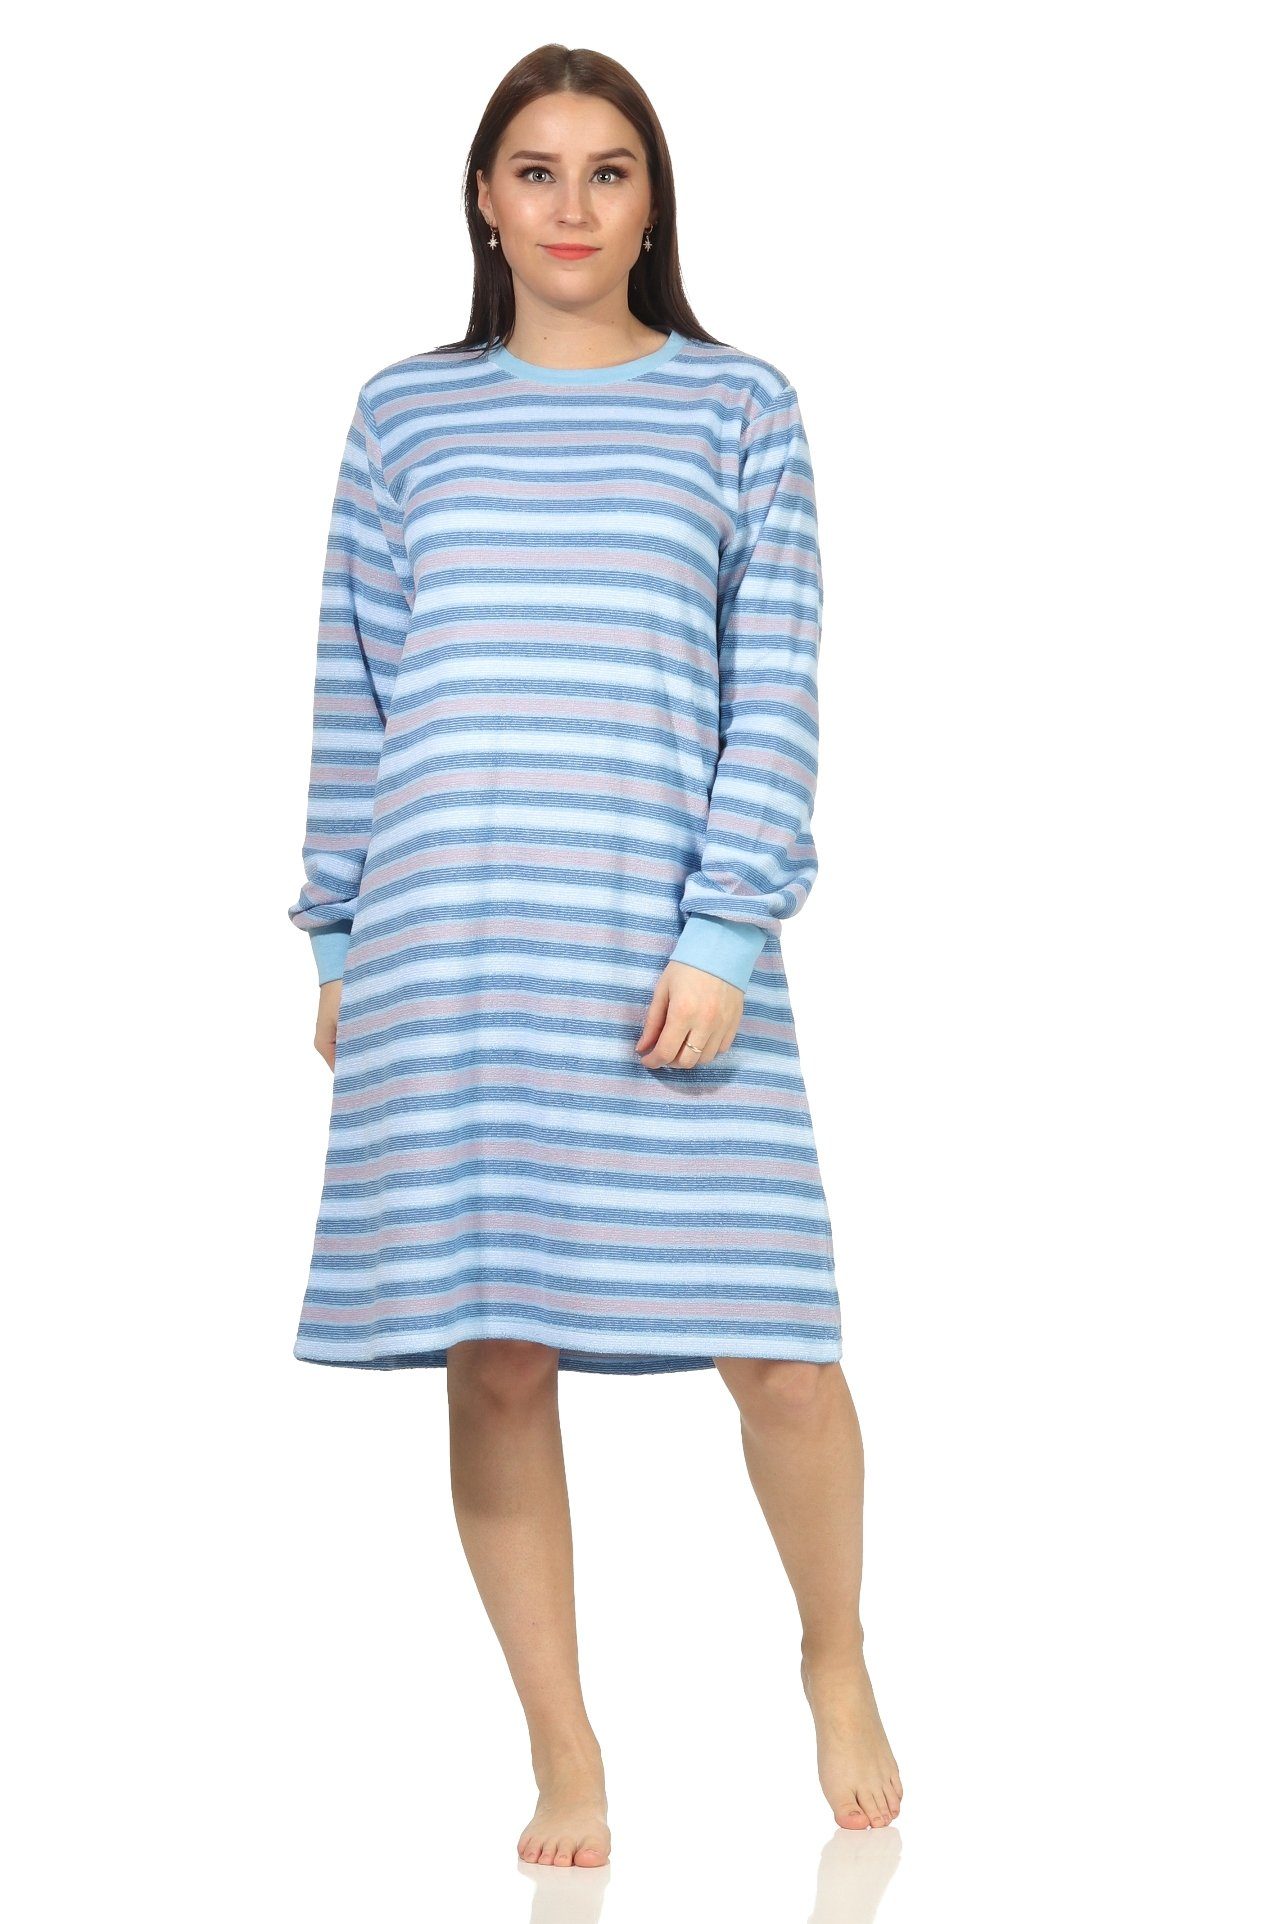 Creative by Normann Nachthemd »Damen Frottee langarm Nachthemd mit Bündchen  in Ringeloptik - auch in Übergrössen« online kaufen | OTTO